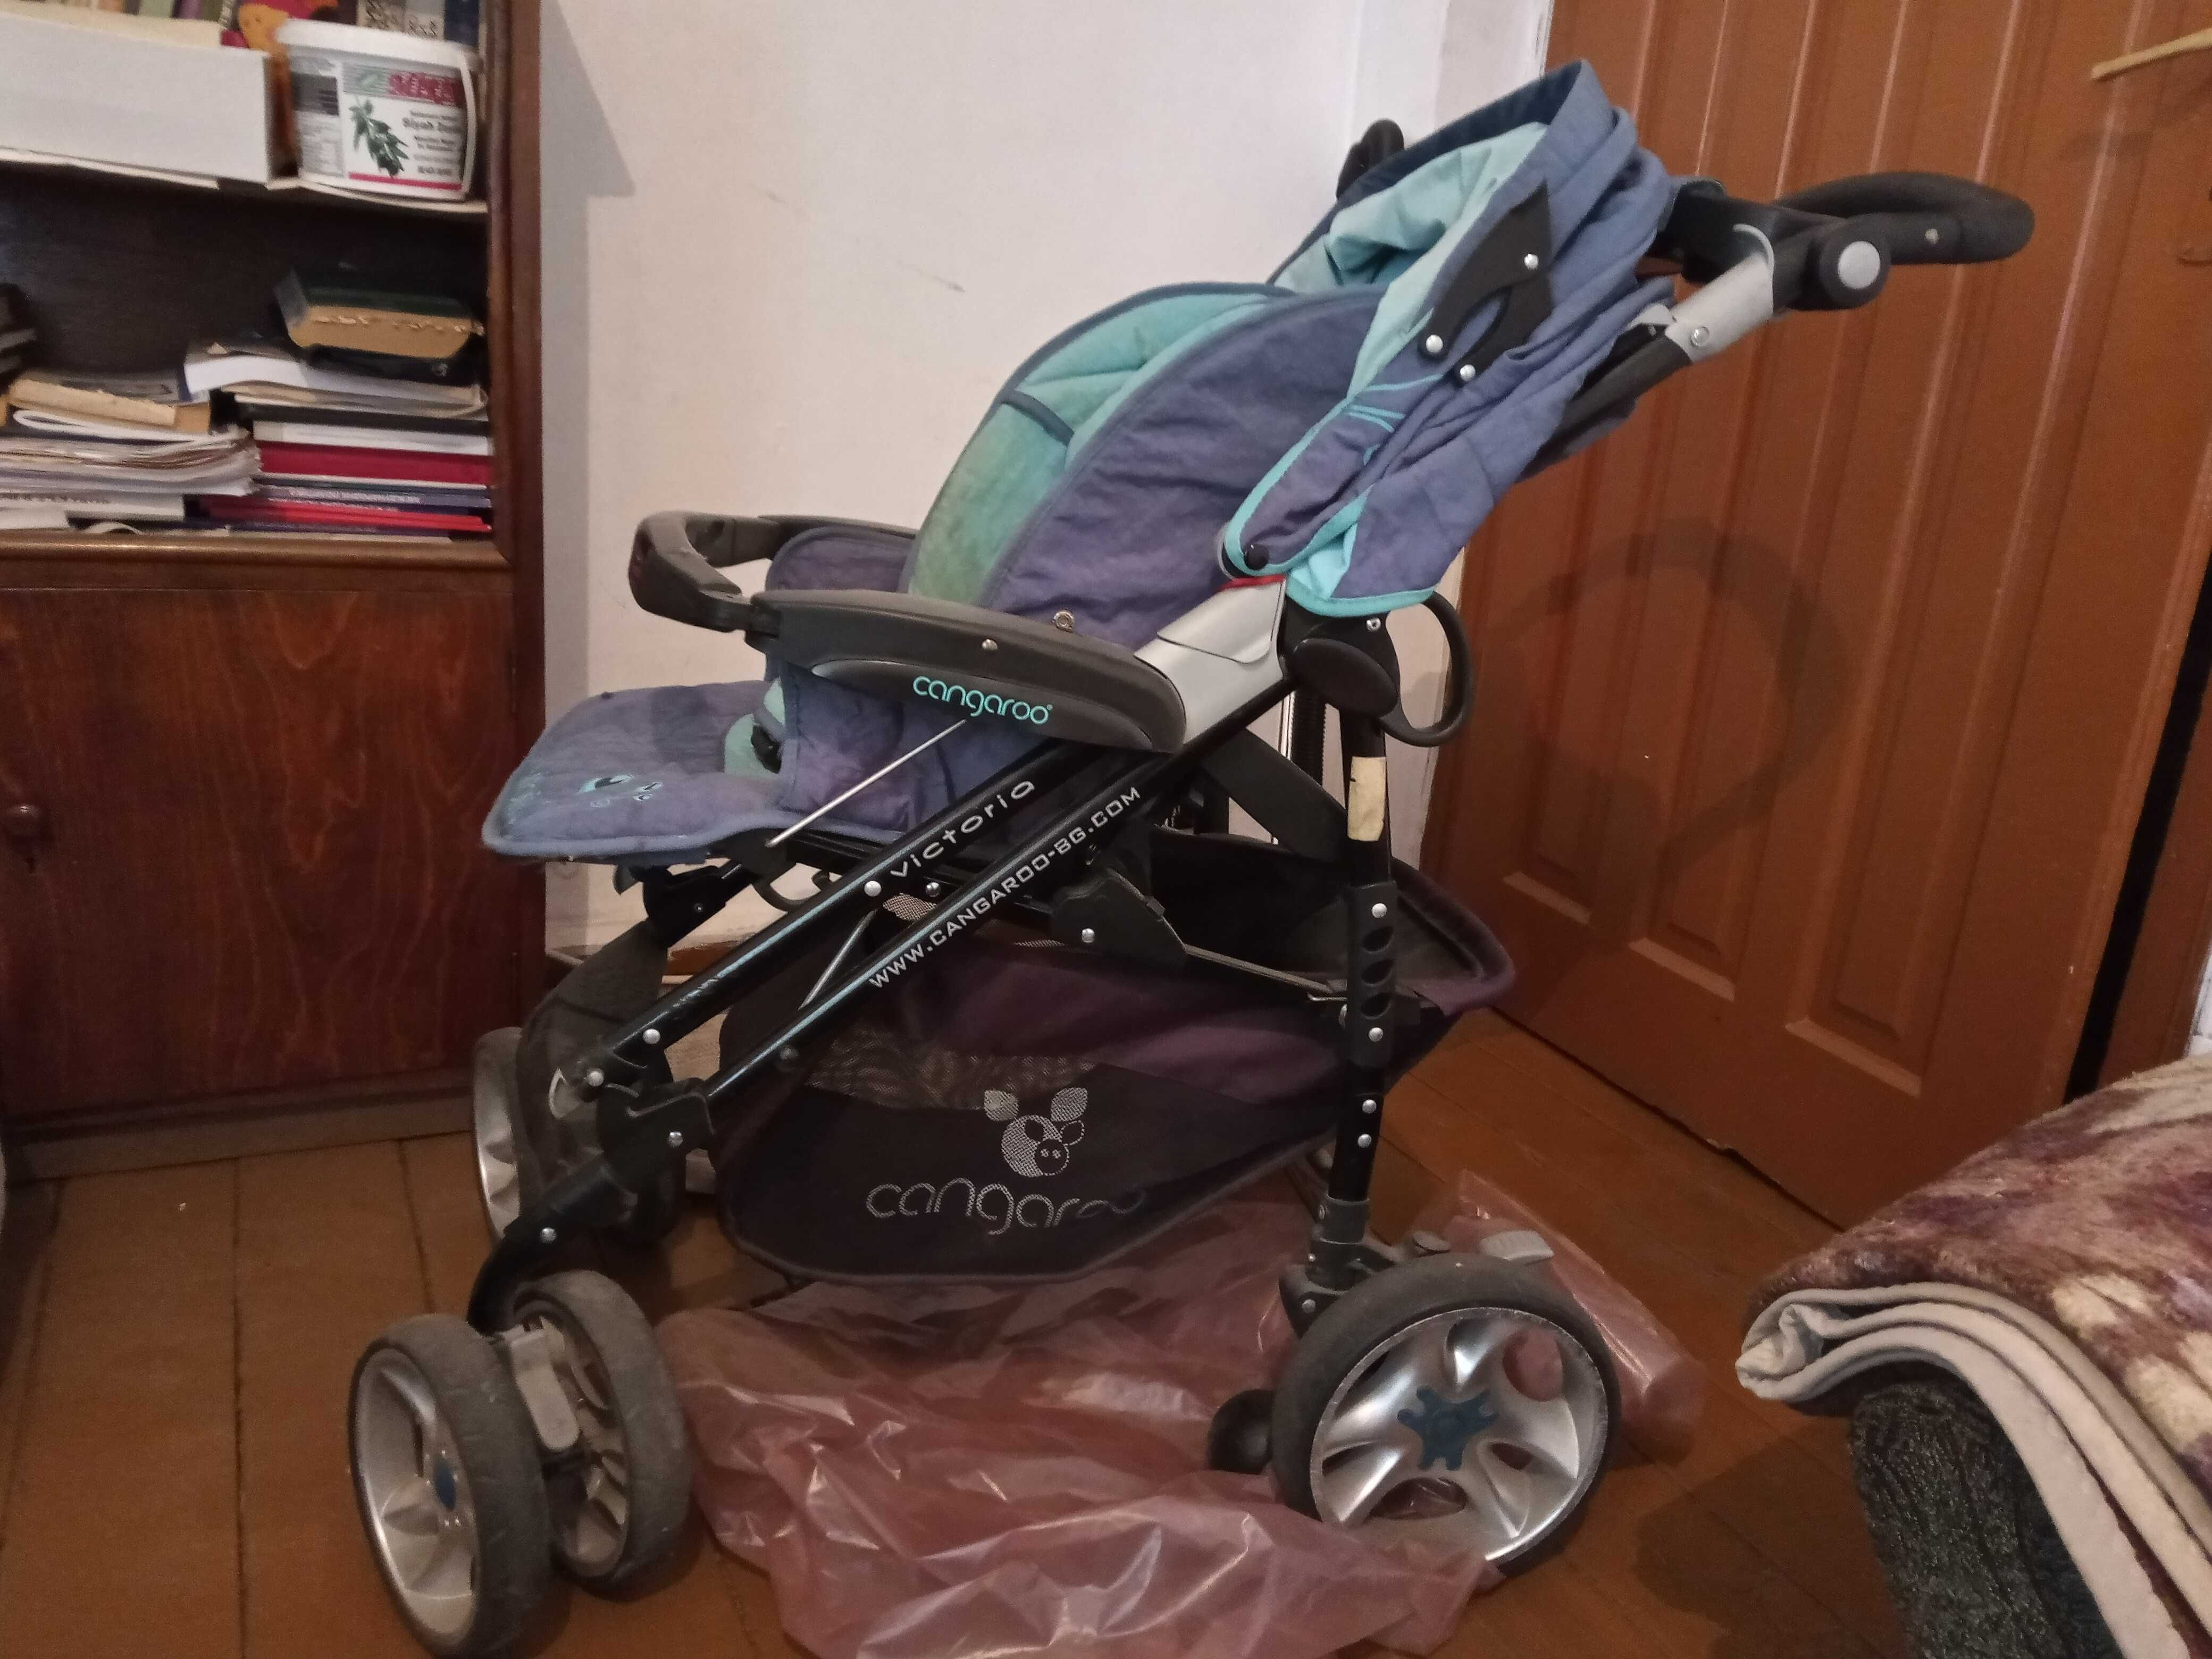 Комбинирана детска количка Cangaroo Victoria